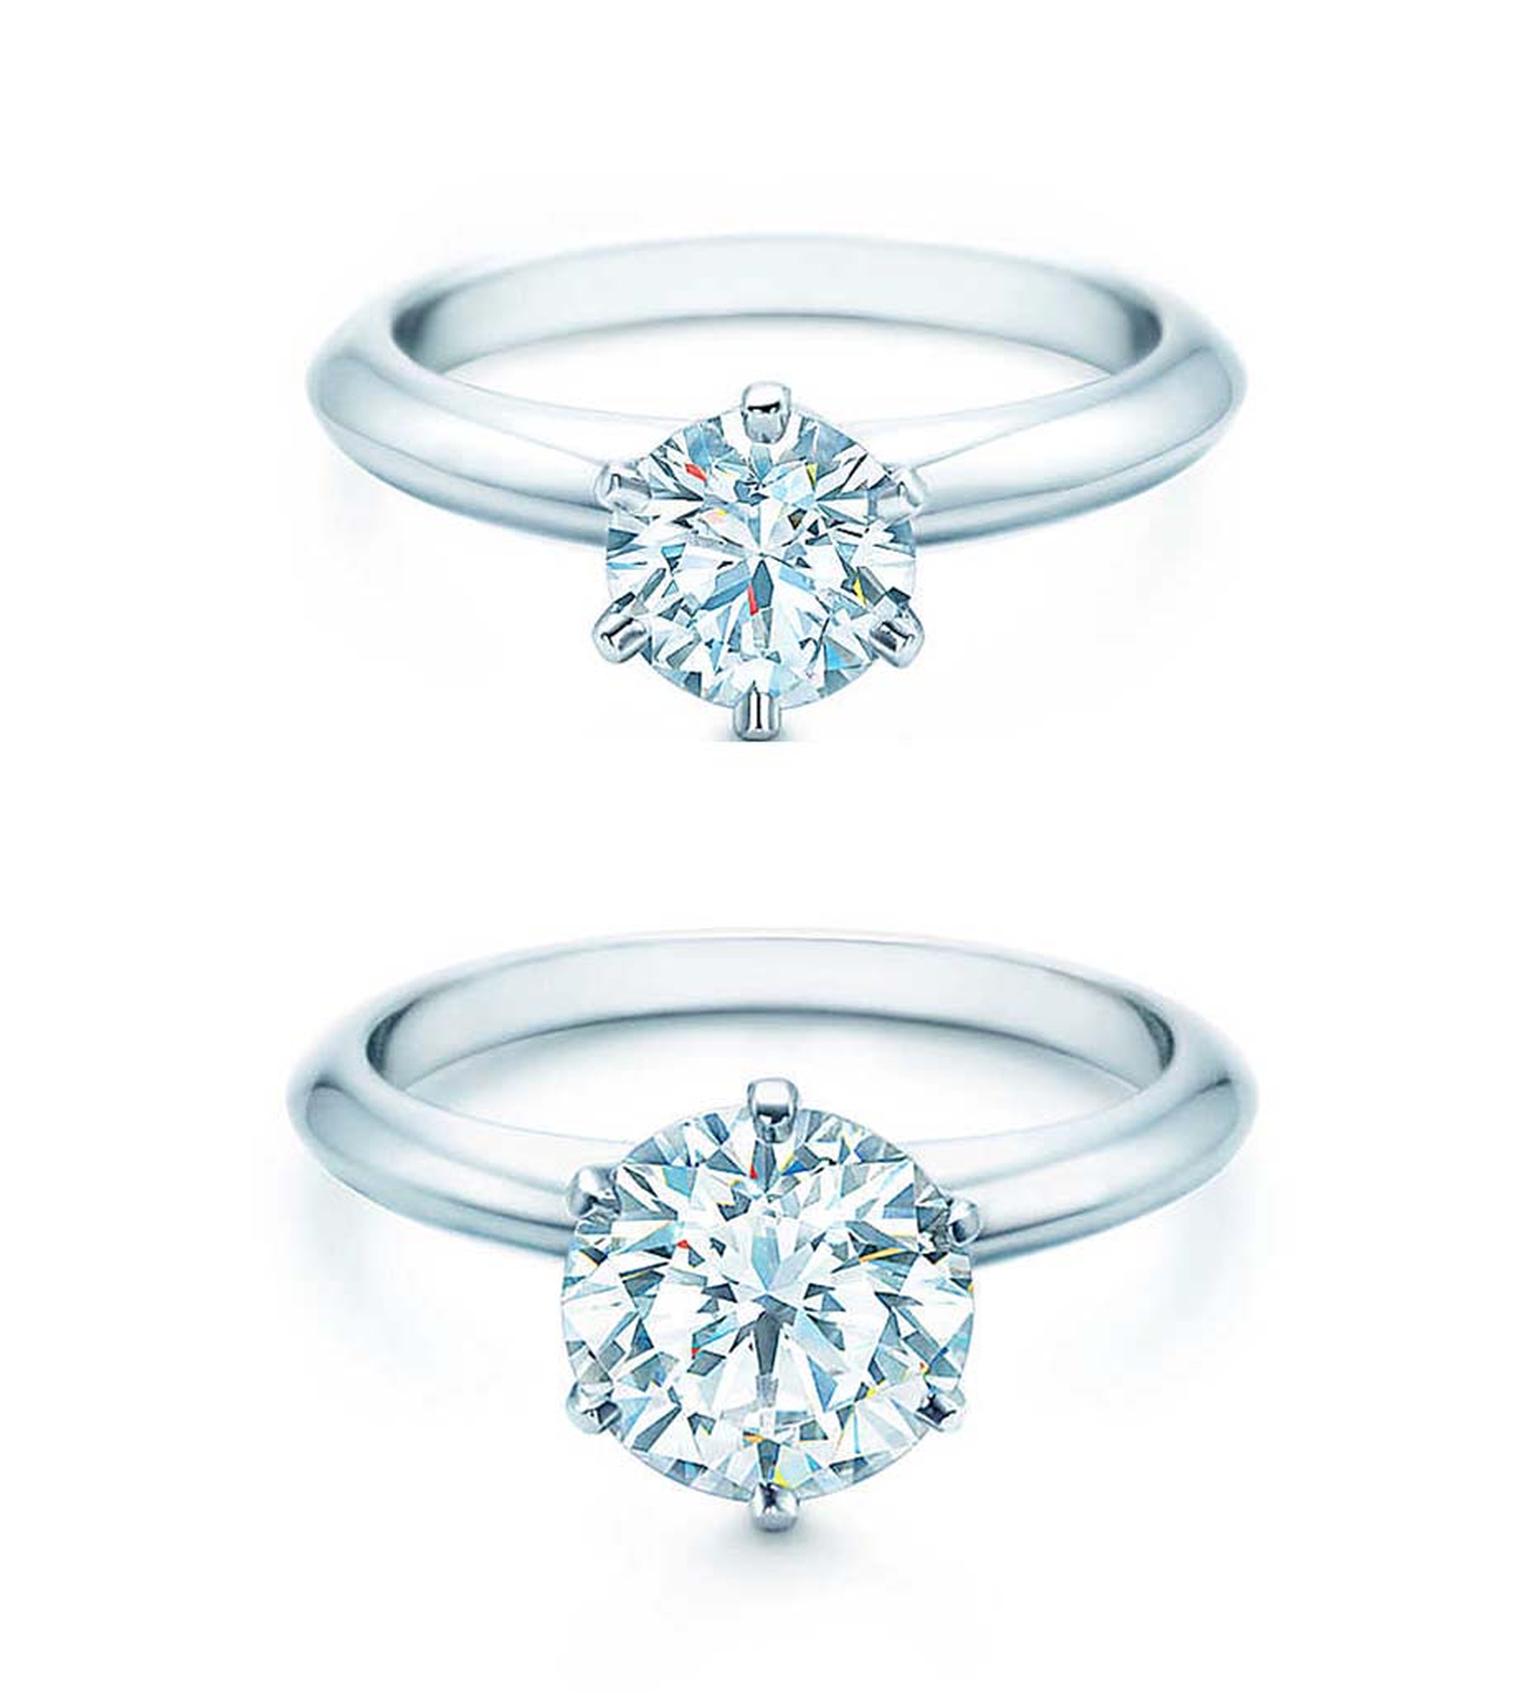 1 carat diamond Tiffany setting 